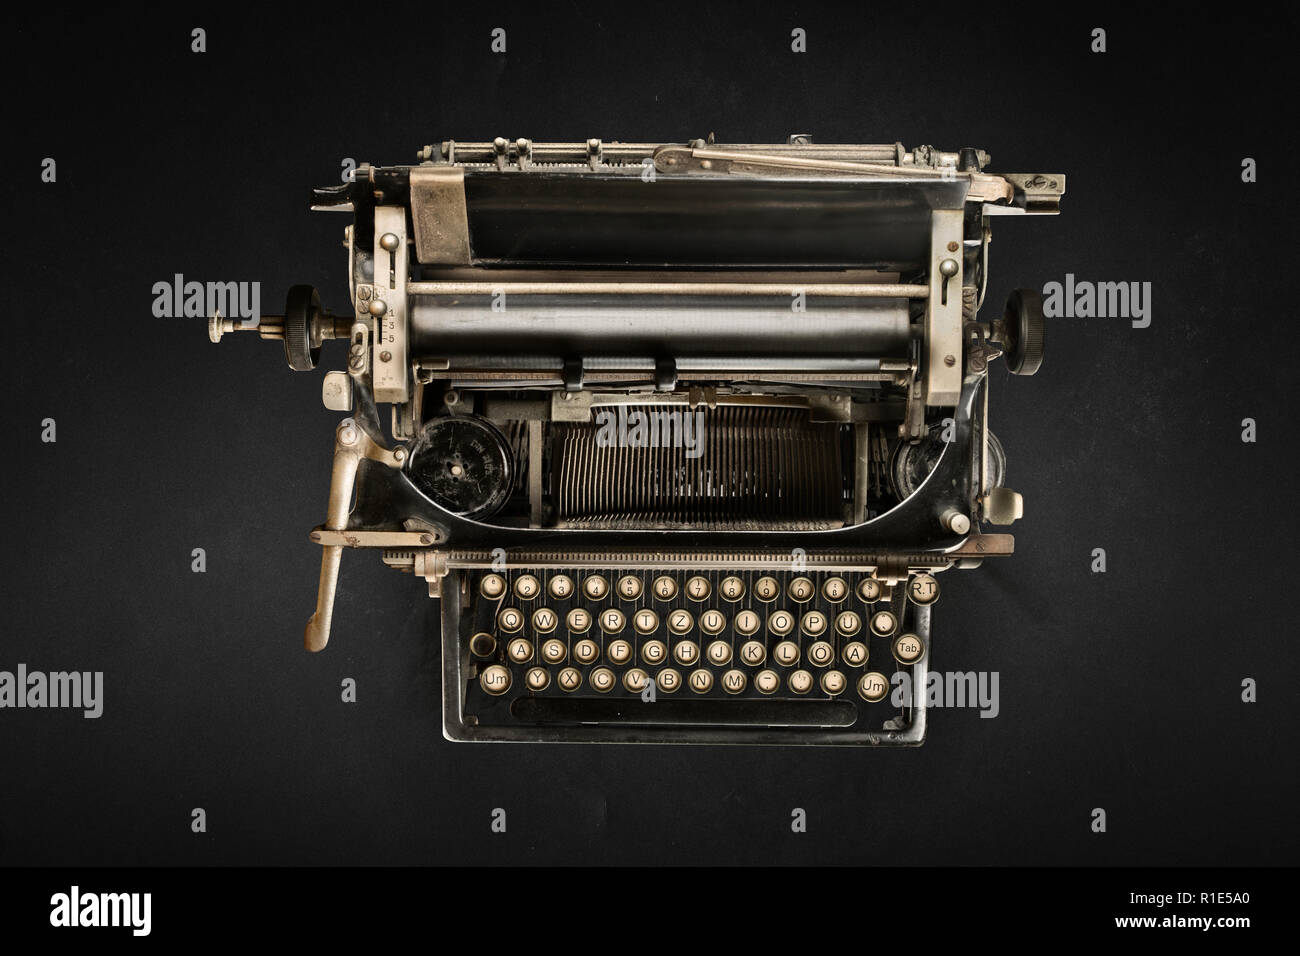 Nastri inchiostratori per macchine da scrivere su sfondo nero in vista superiore Foto Stock